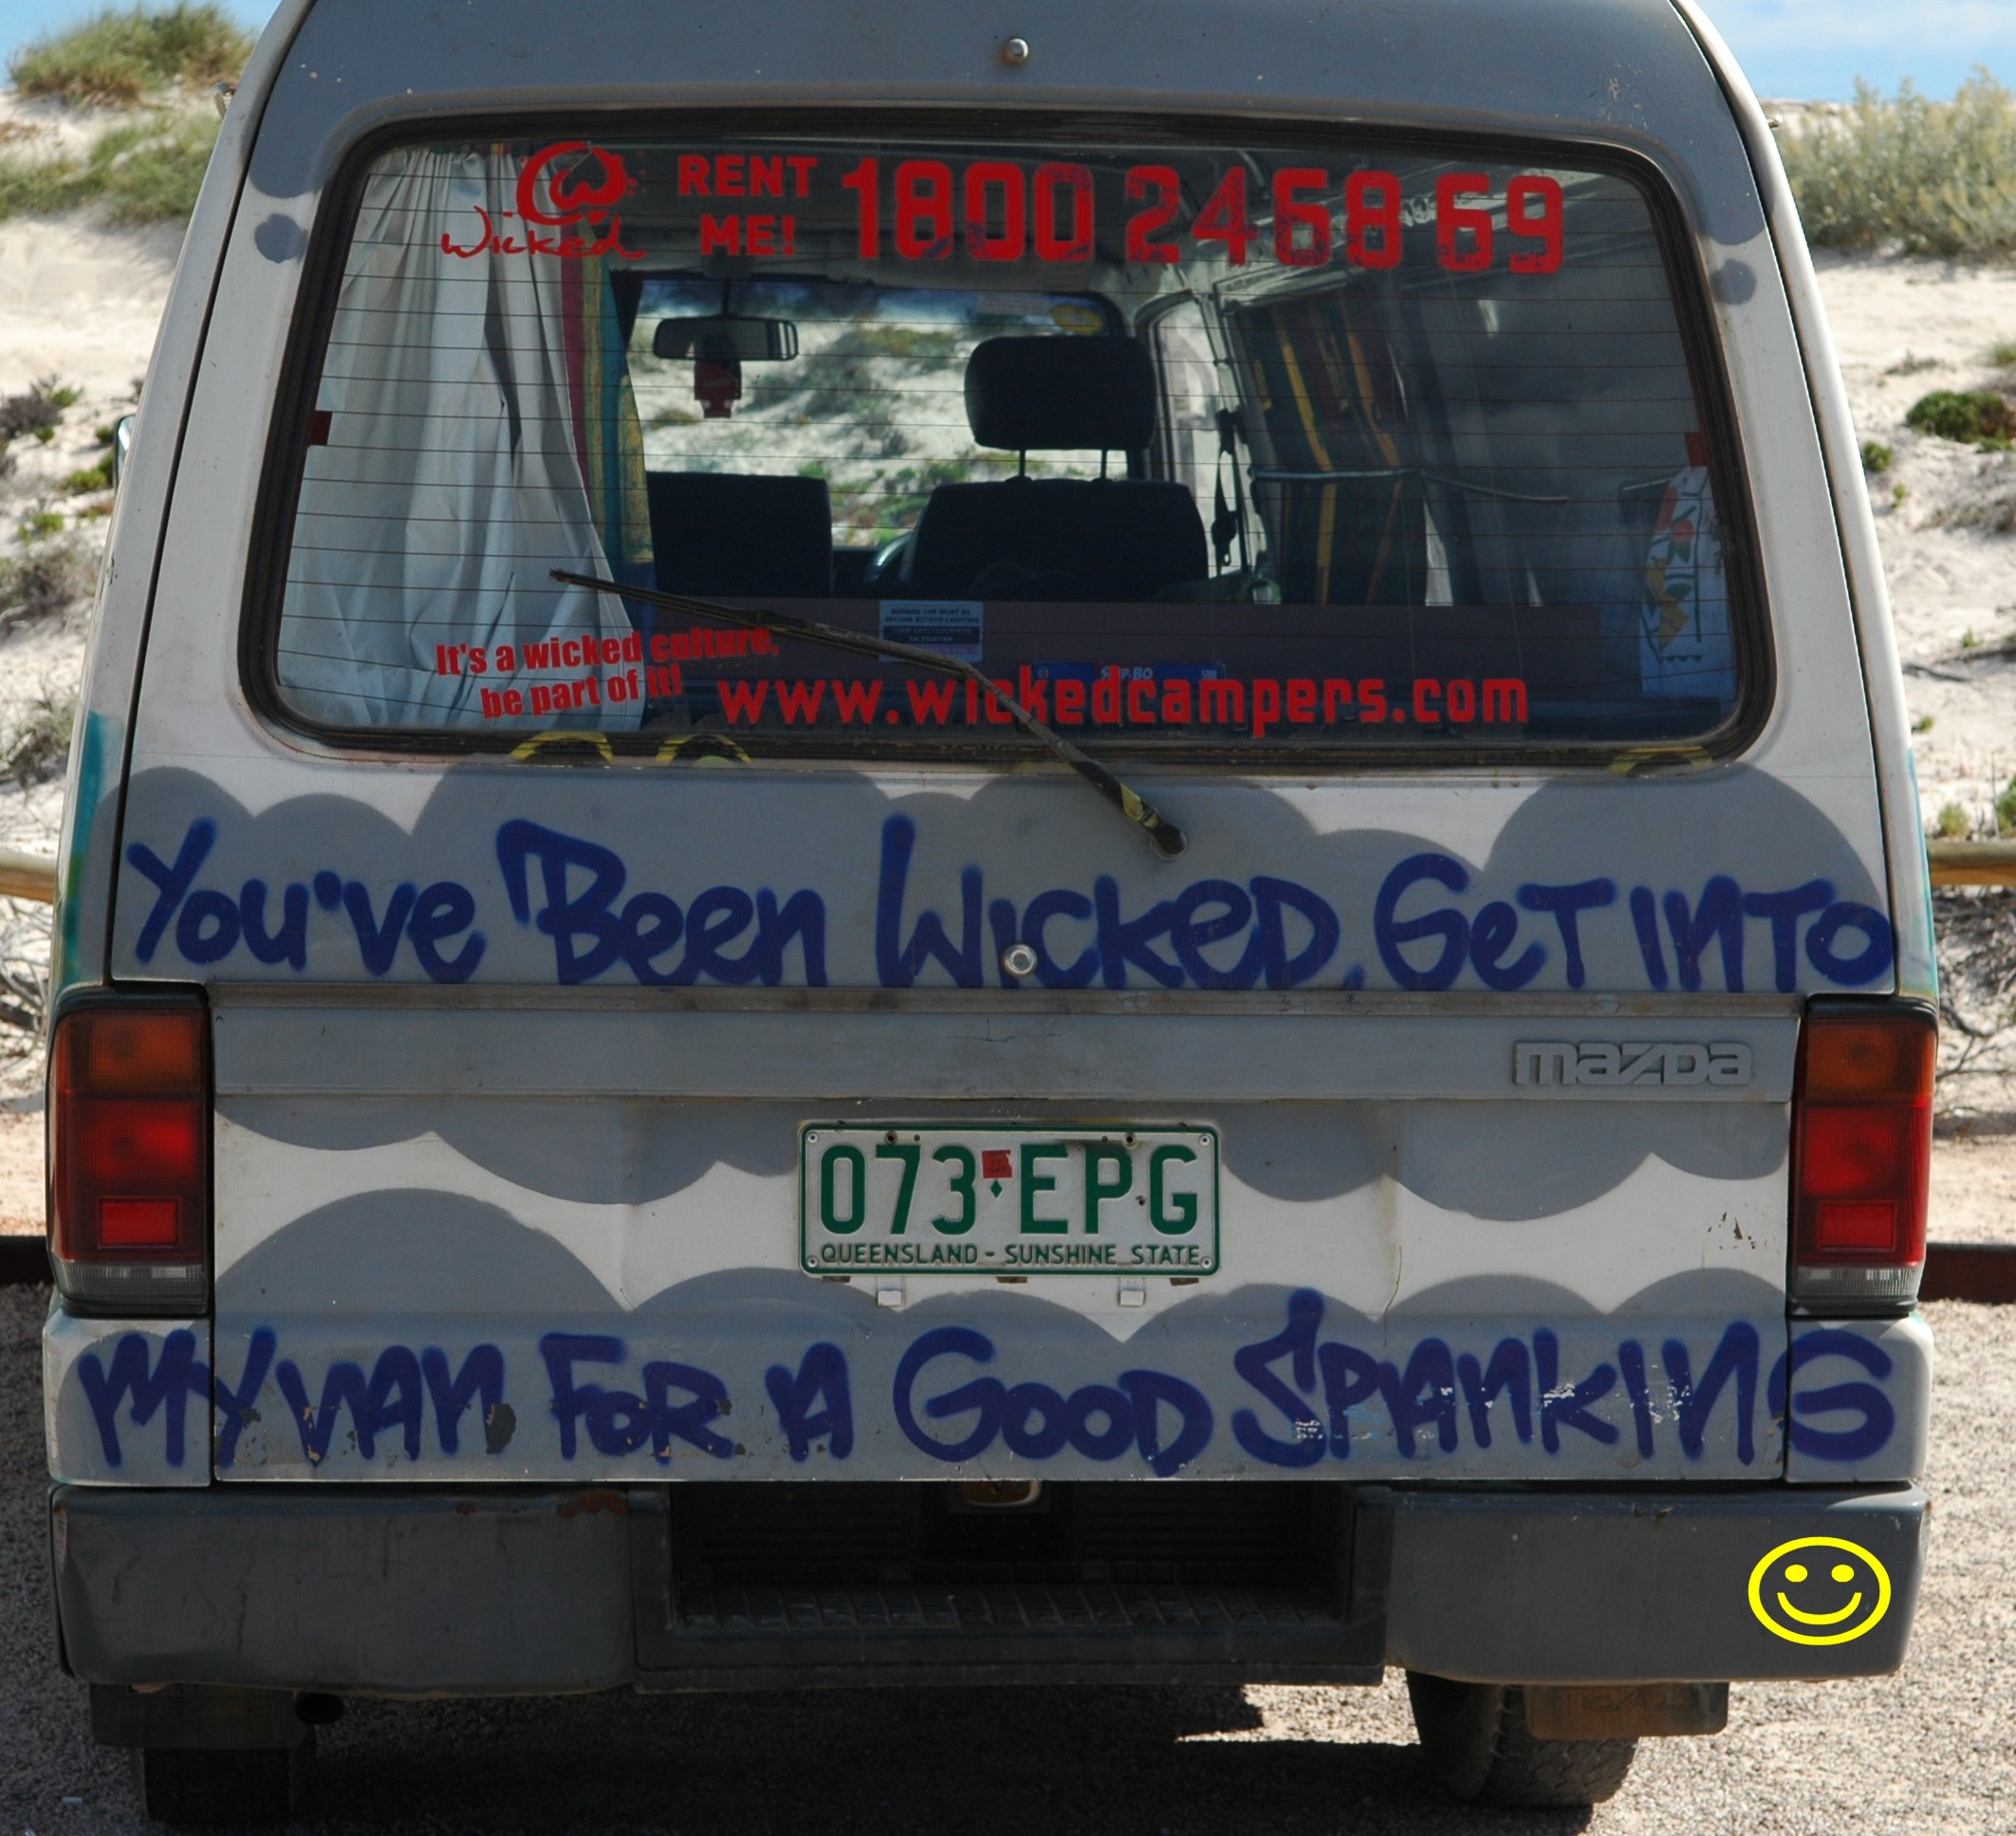 Wicked van